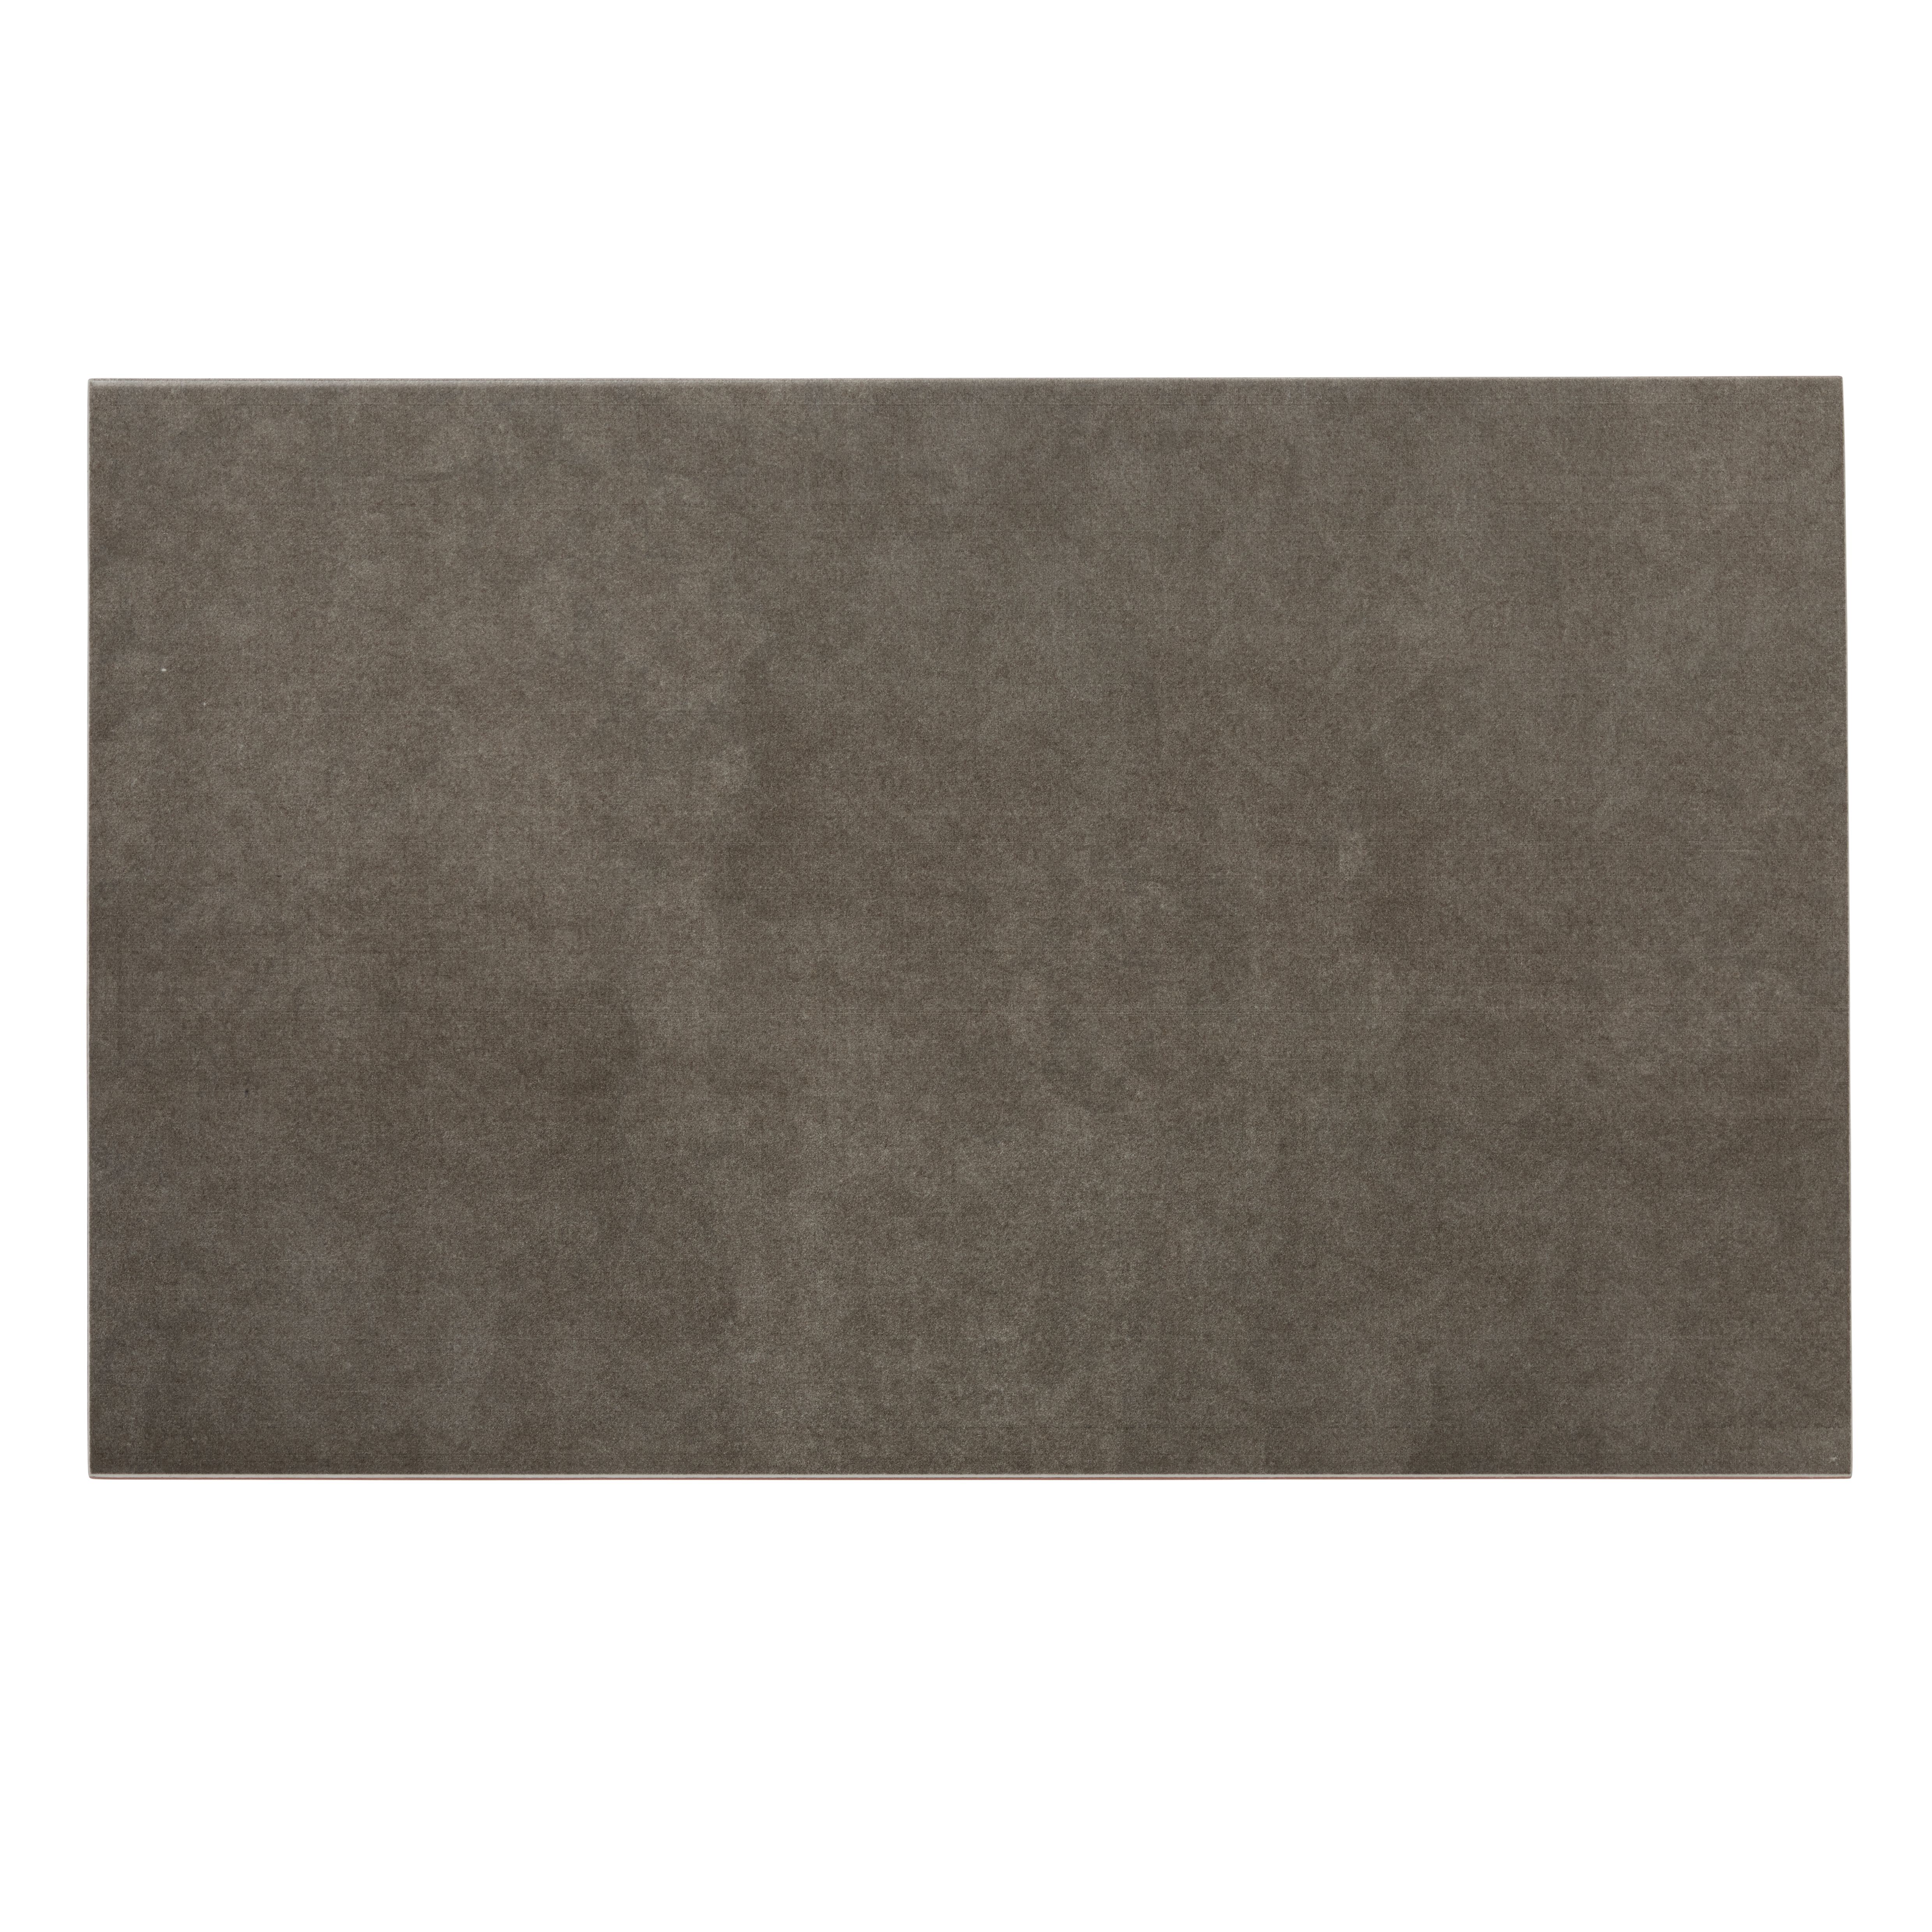 Cimenti Dove Matt Flat Ceramic Wall Tile, Pack of 10, (L)402.4mm (W)251.6mm